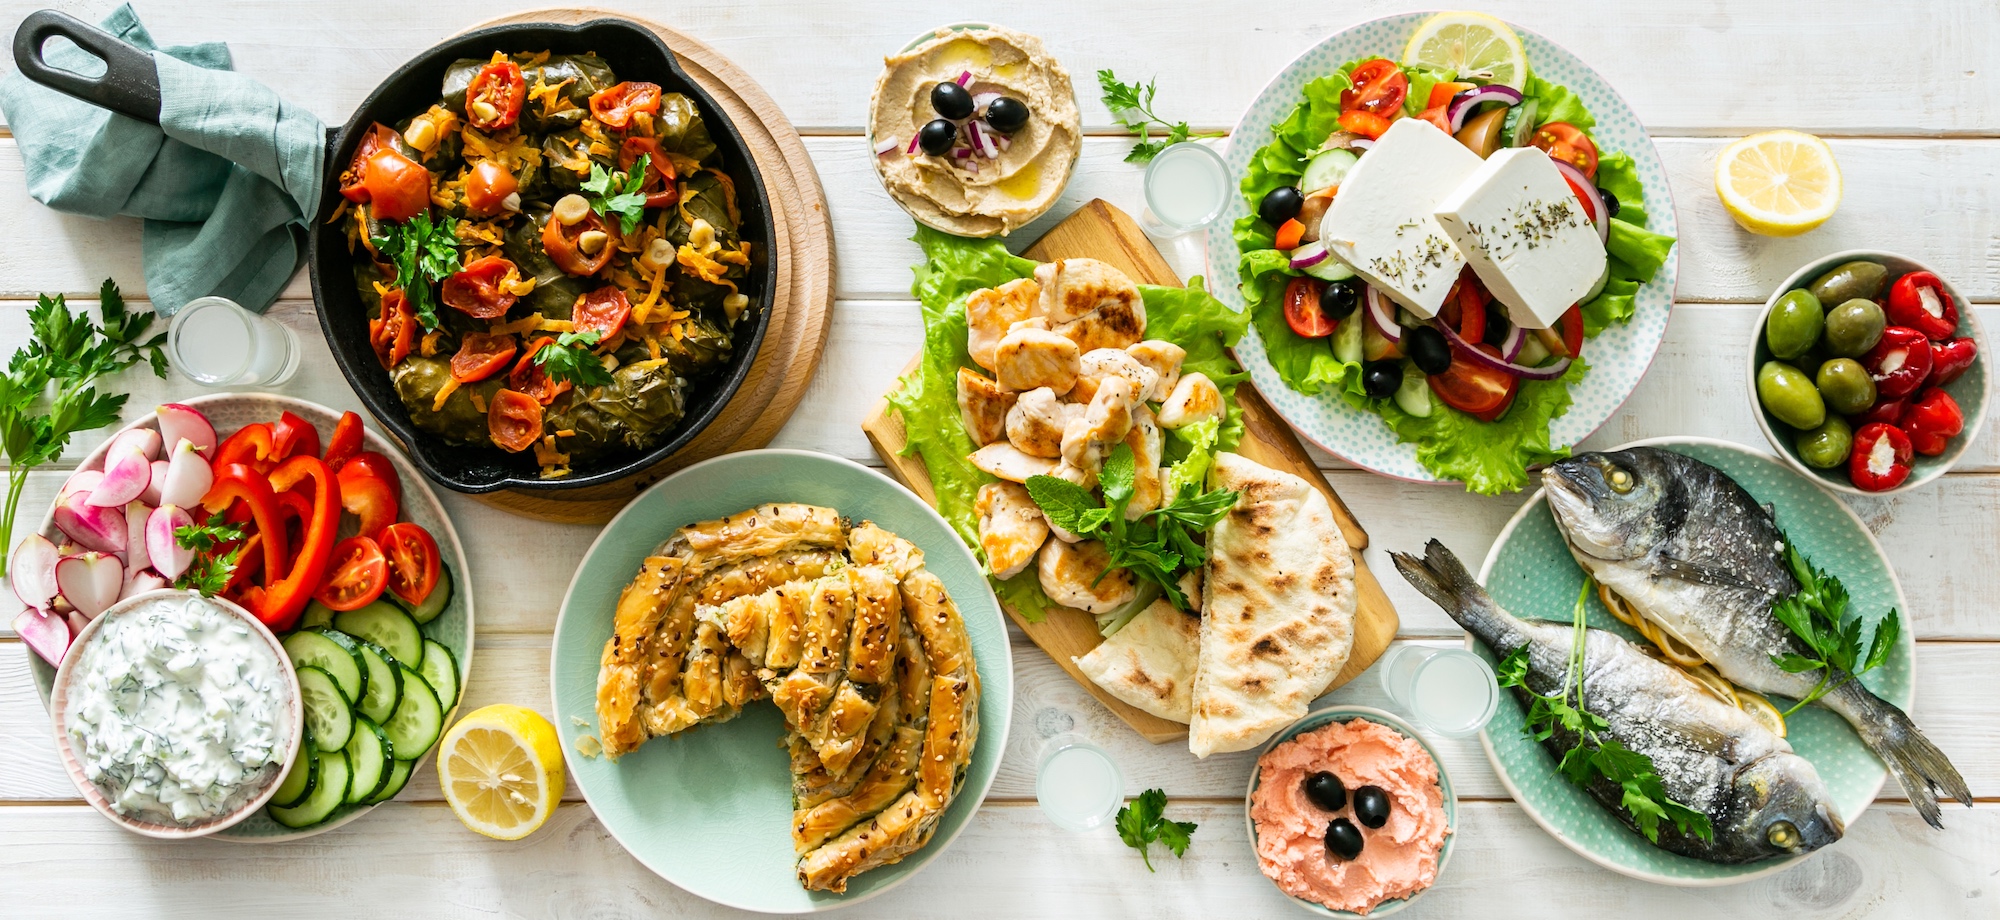 Exemple de plats de la cuisine méditerranéenne. © anaumenko, Adobe Stock